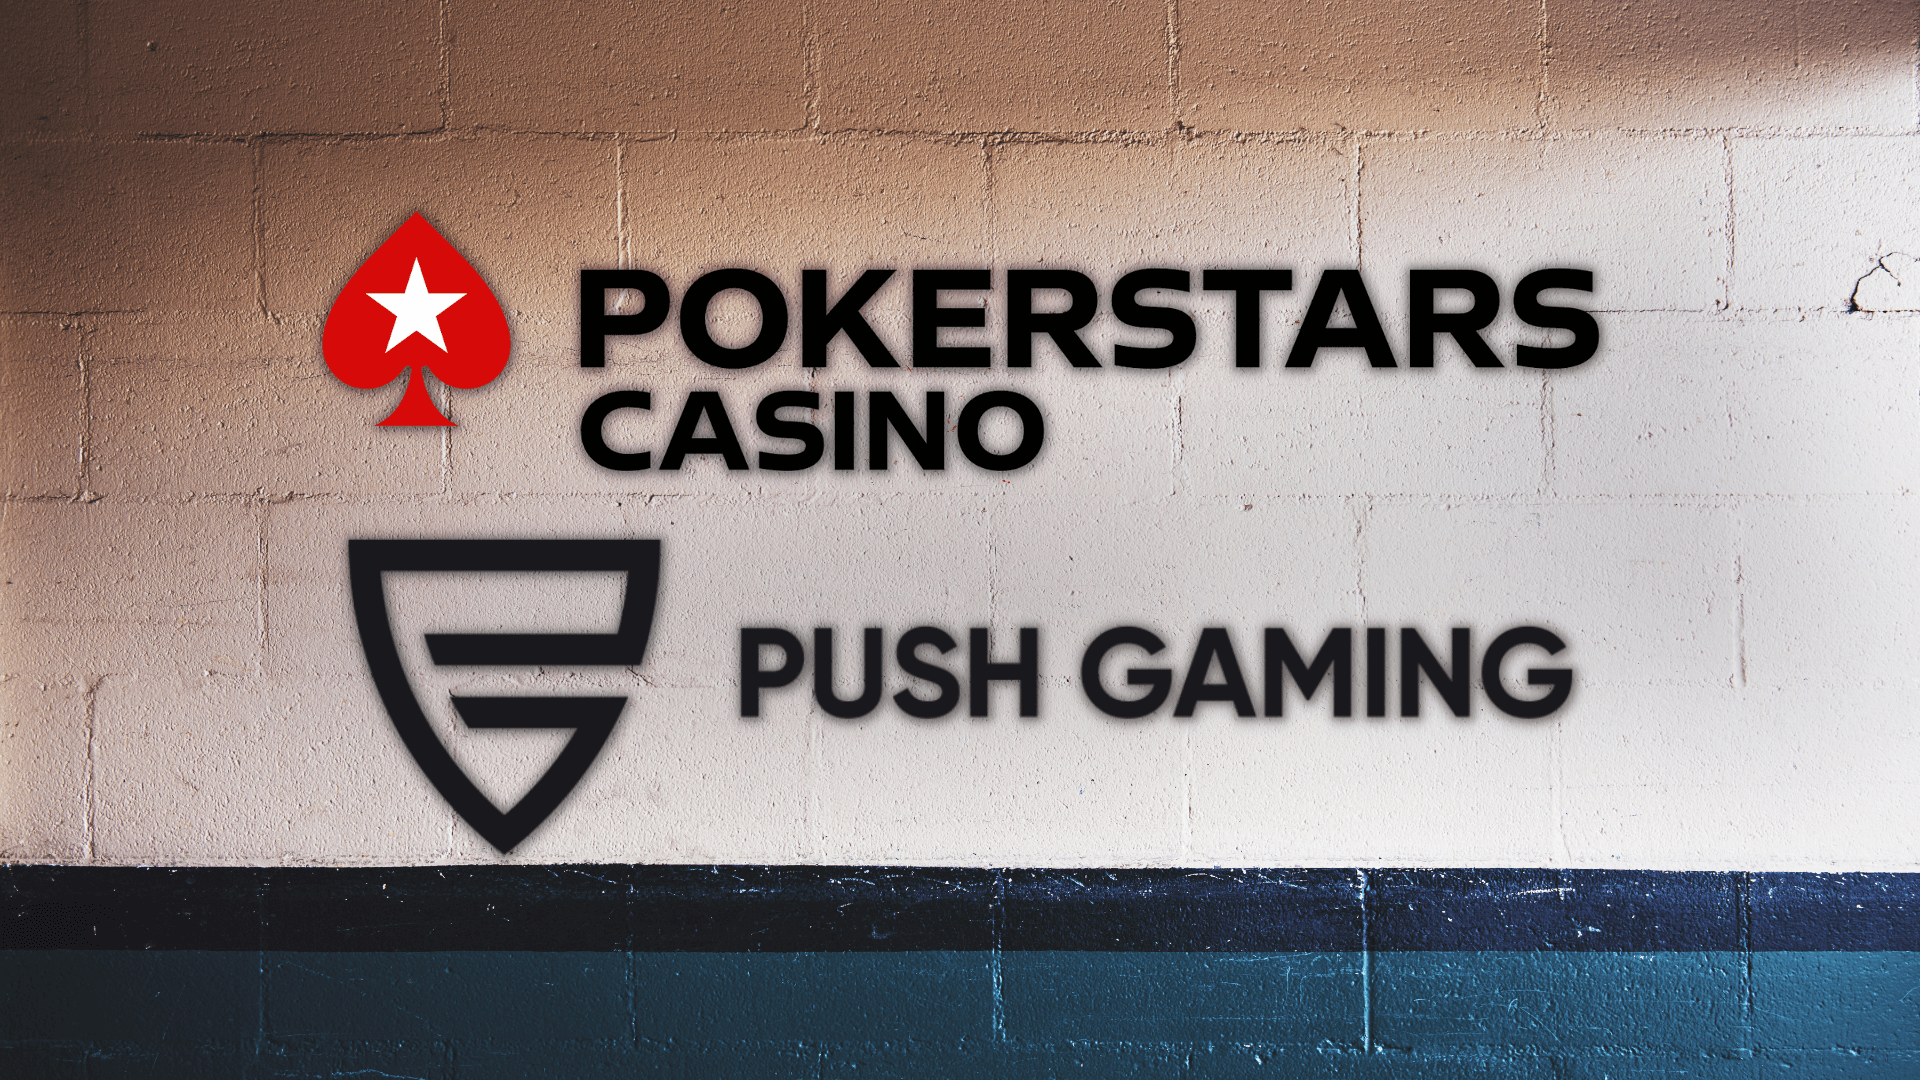 Push Gaming annuncia la partnership con PokerStars: “Riconoscimento alla qualità creativa”. L’intero portafoglio di giochi sarà distribuito nei mercati autorizzati